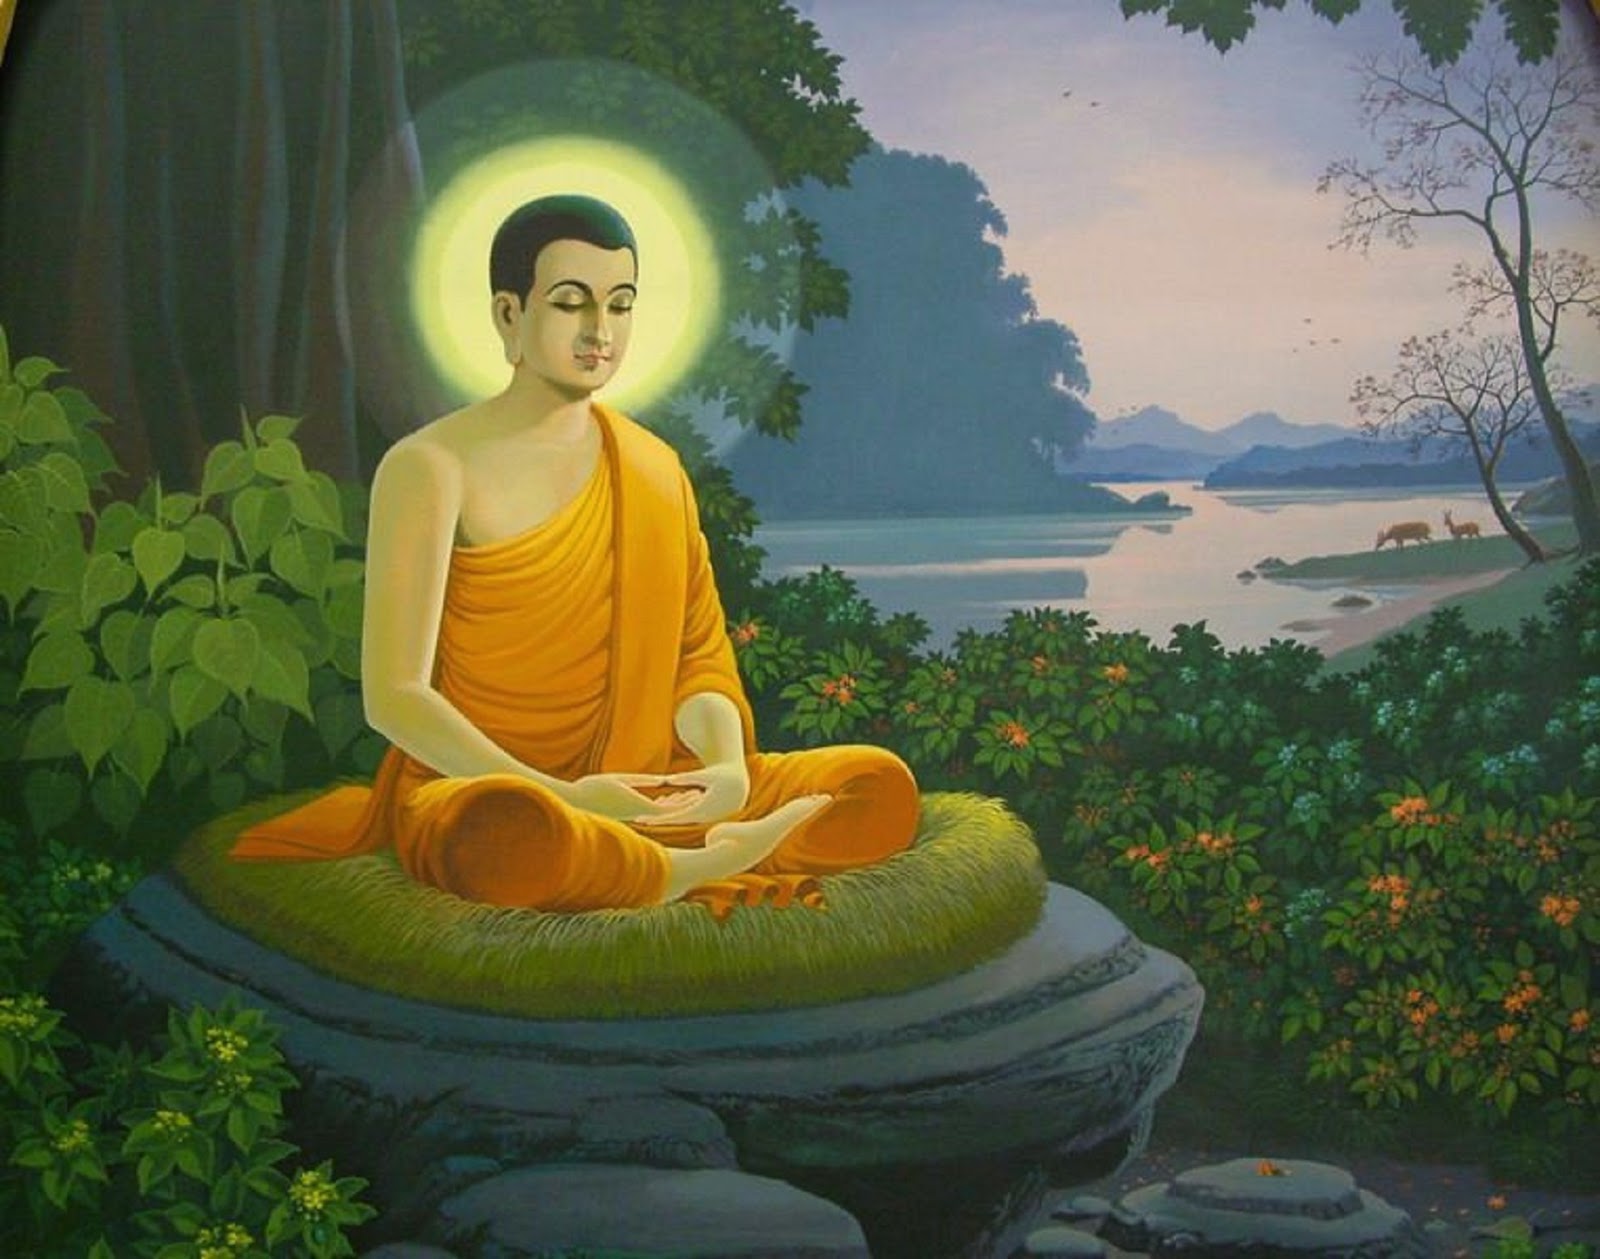 Hãy ngắm nhìn bức ảnh Phật Thích Ca Mâu Ni đầy nghĩa khí và tâm linh để truyền cảm hứng và niềm tin cho ngày mới của bạn.